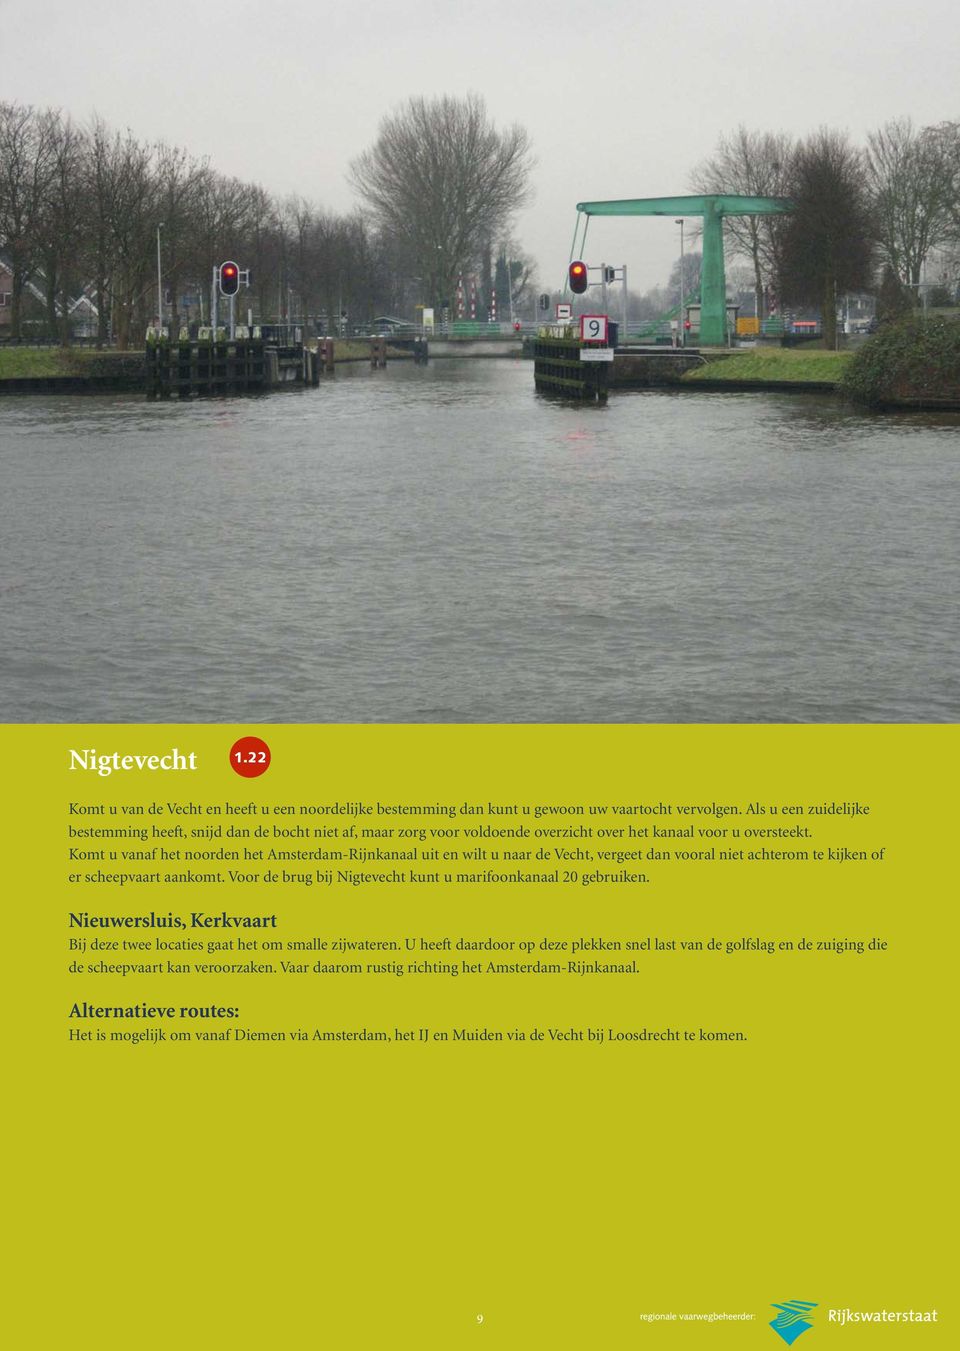 Komt u vanaf het noorden het Amsterdam-Rijnkanaal uit en wilt u naar de Vecht, vergeet dan vooral niet achterom te kijken of er scheepvaart aankomt.